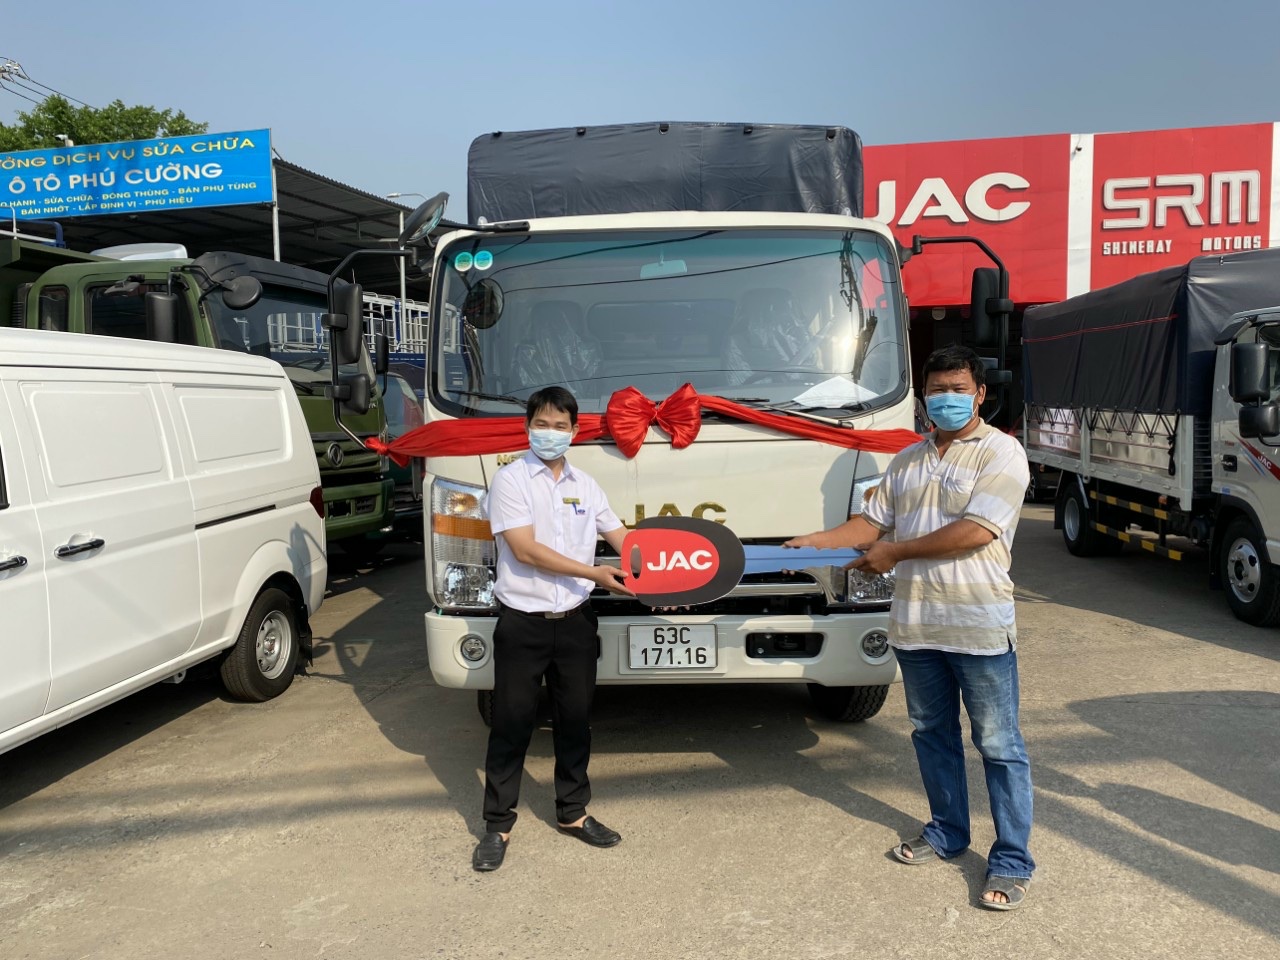 Gia đình anh Thiện ở Tiền Giang mua xe JAC N650S